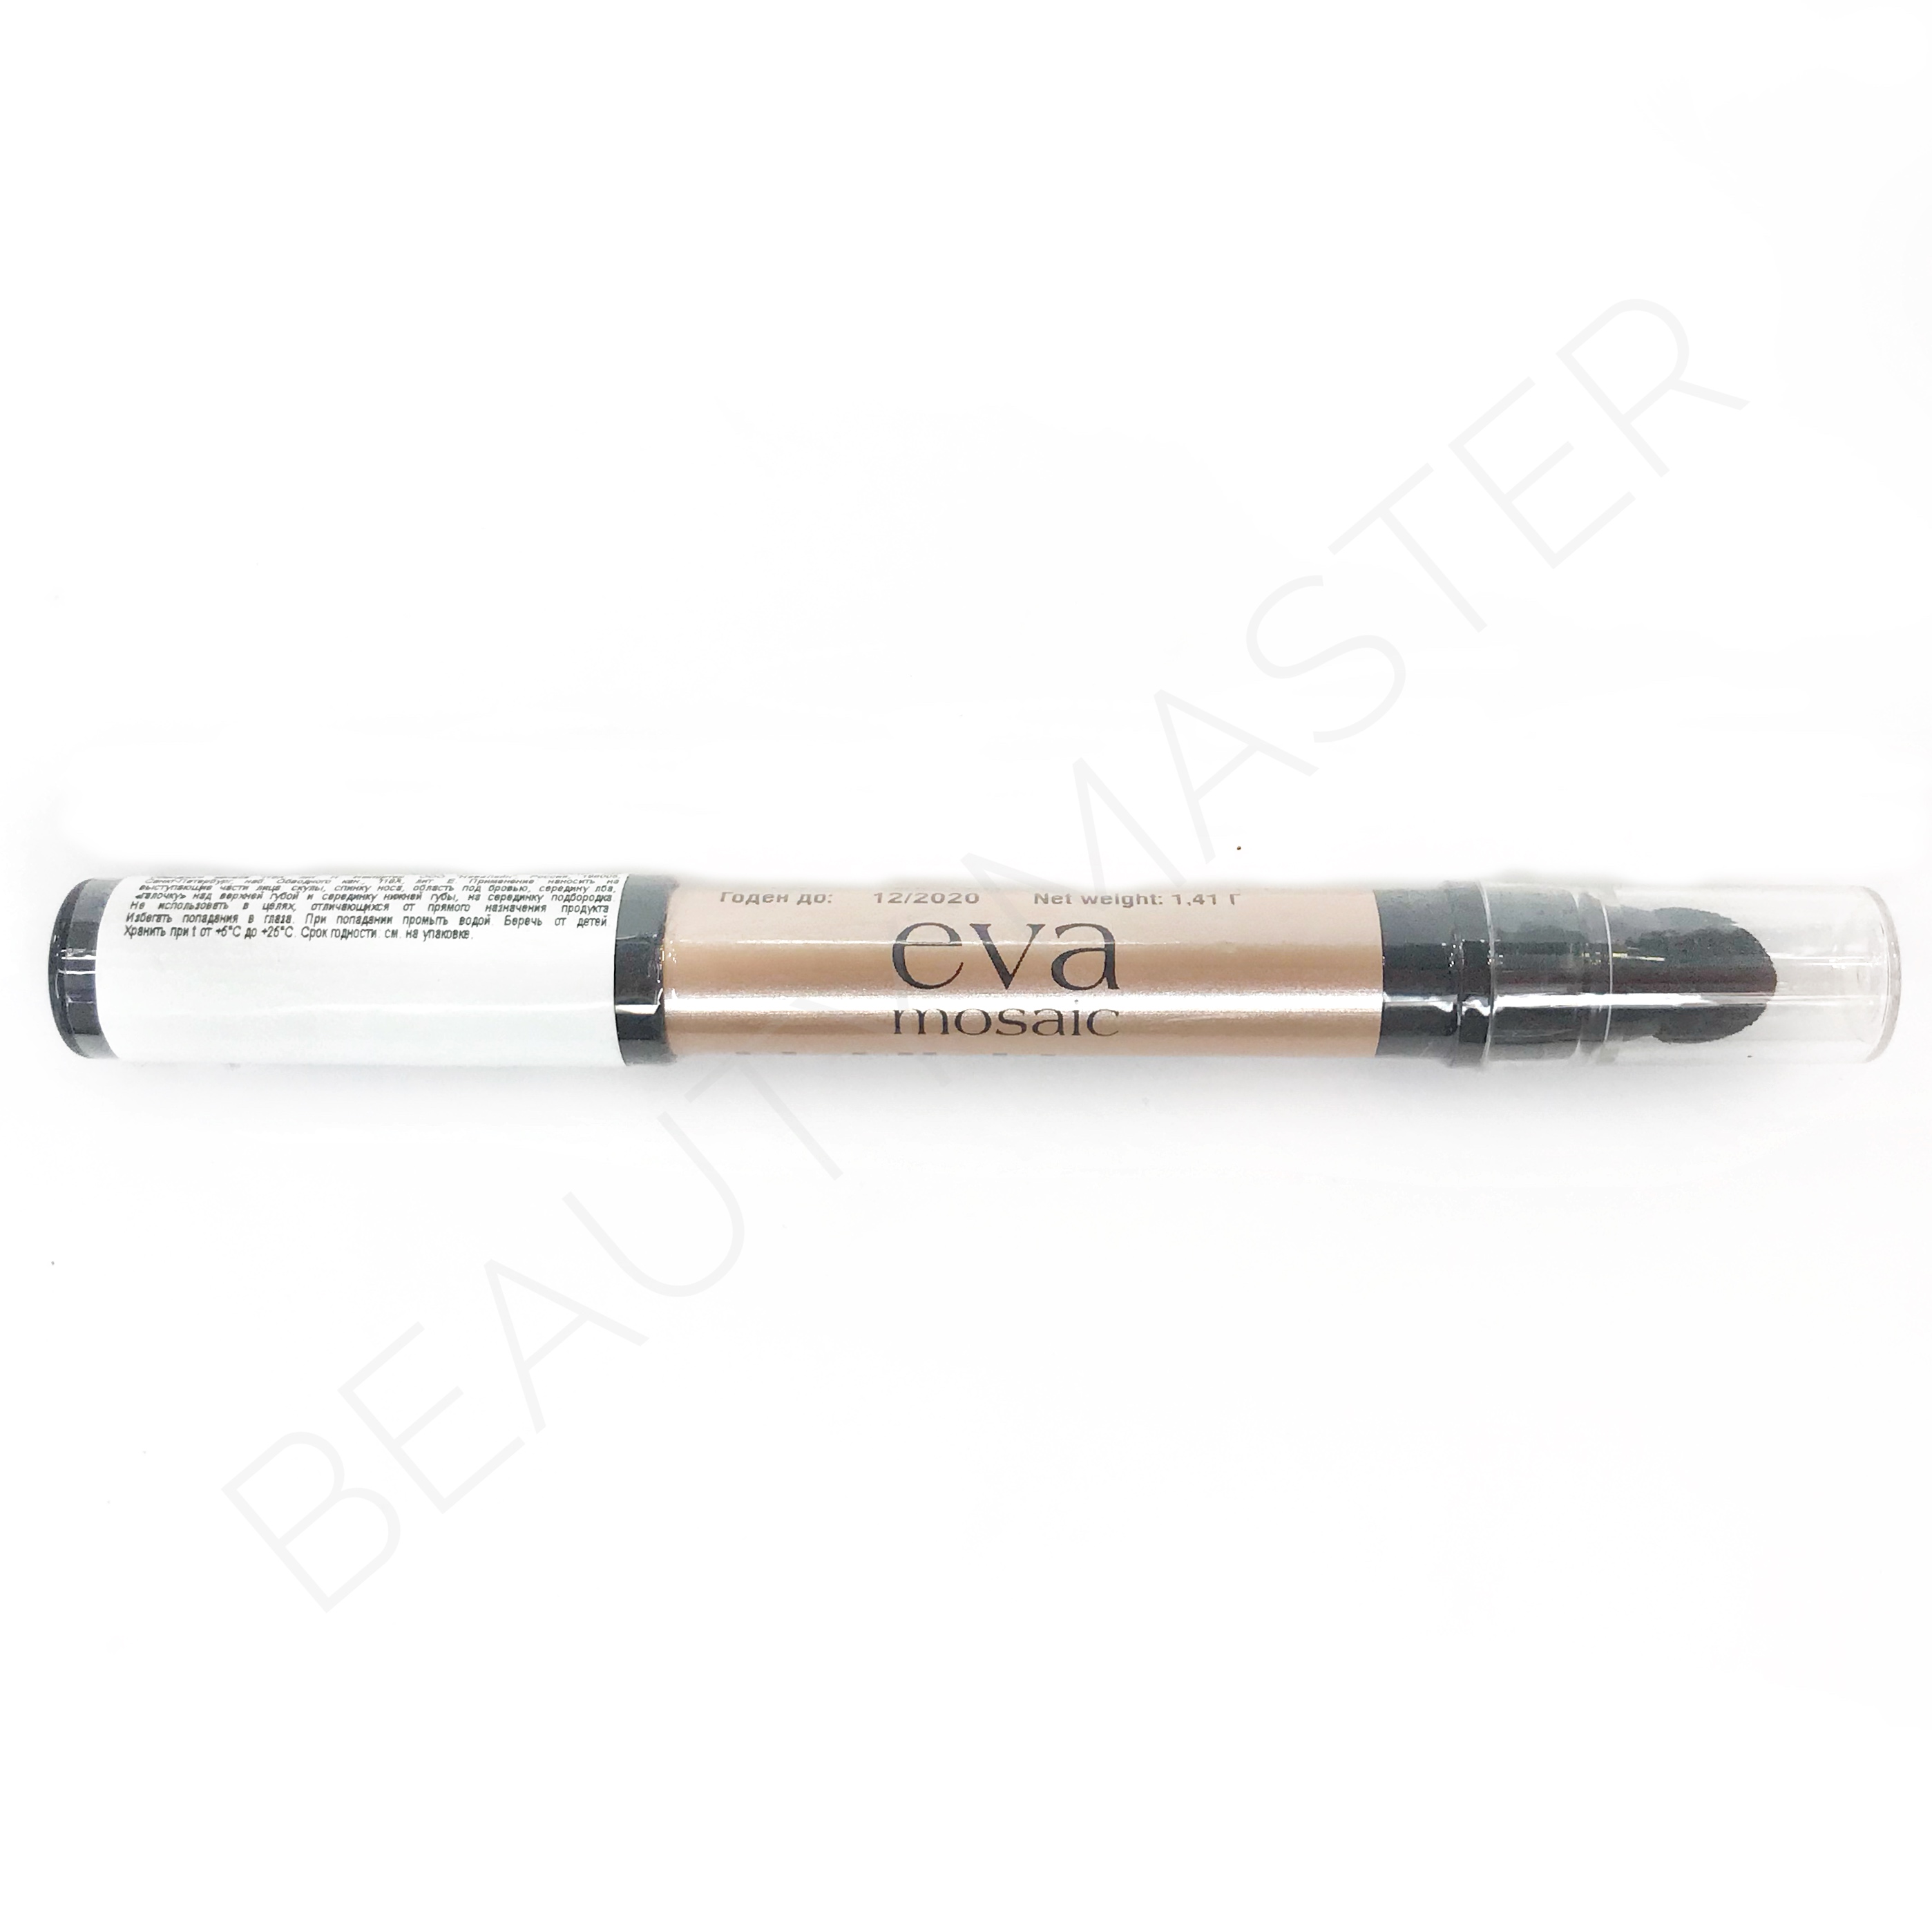 EVA mosaic Универсальный хайлайтер-карандаш